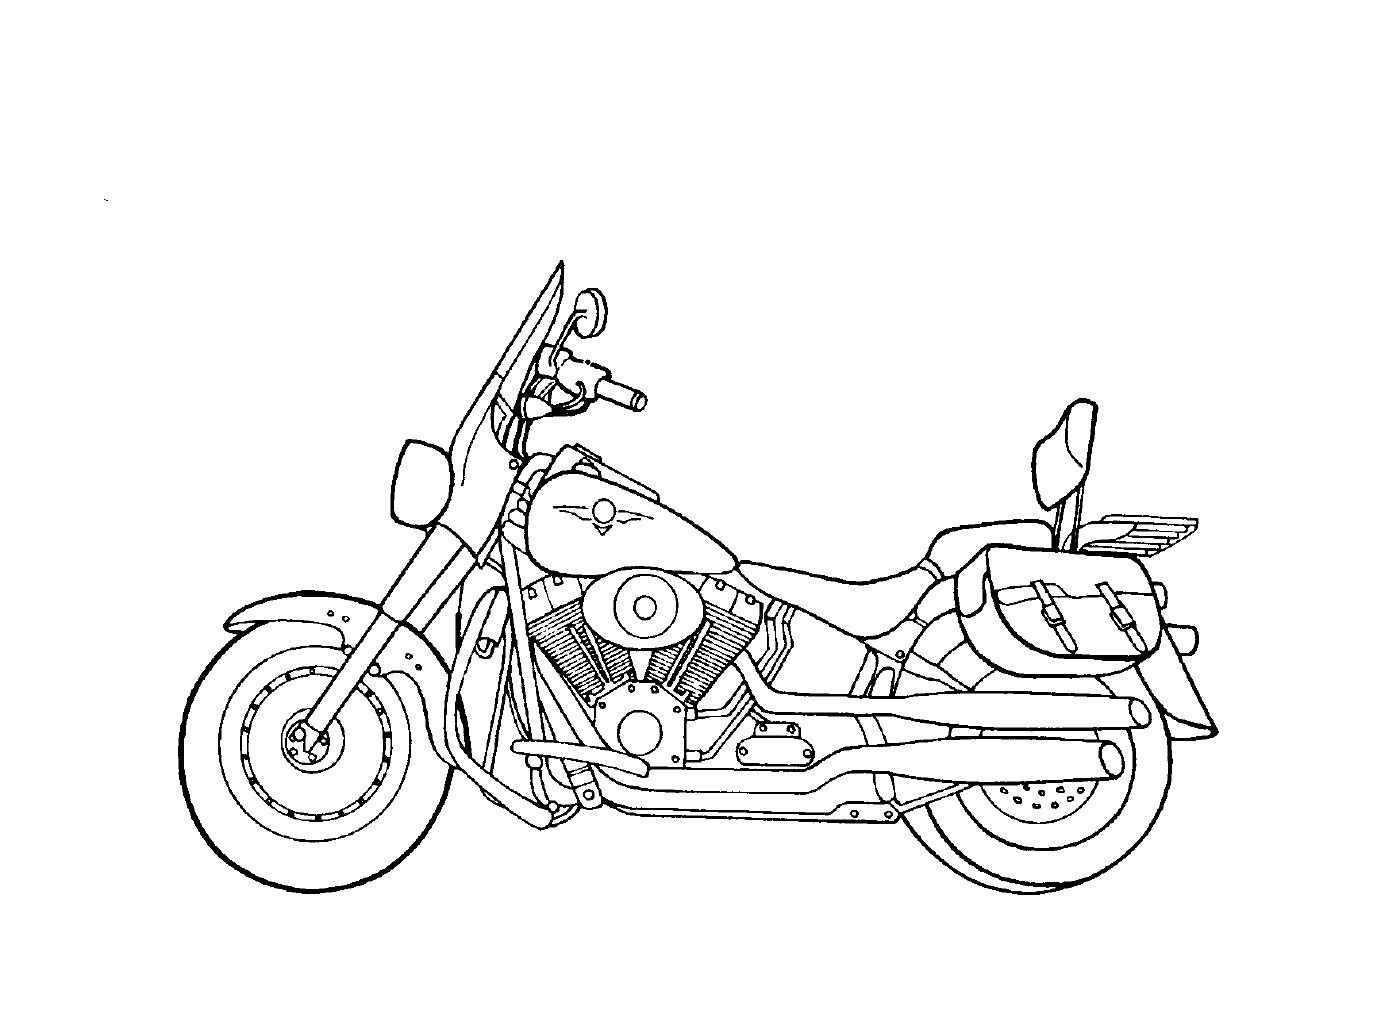  Мотоцикл No 11 